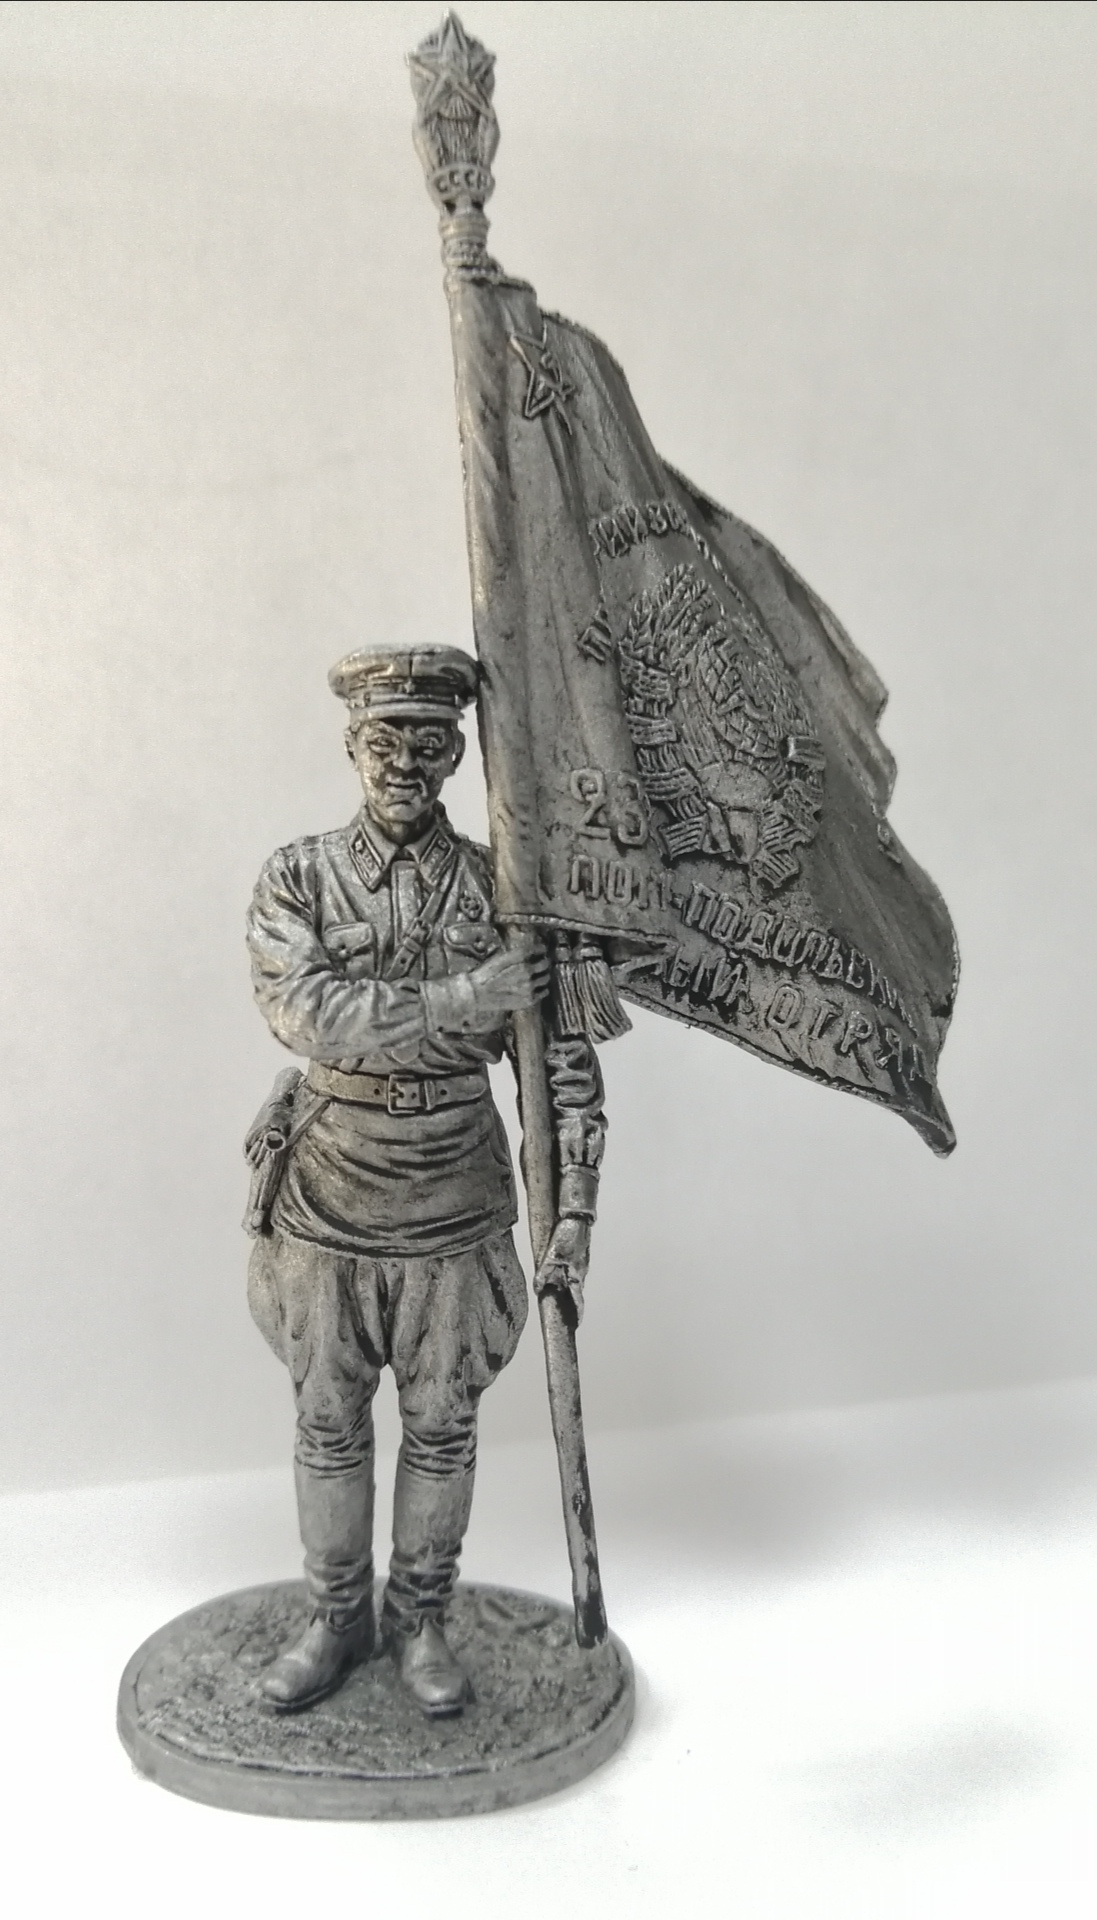 WW2-54  миниатюра  Ст.сержант погранвойск НКВД со знаменем, 1939-43 гг. СССР